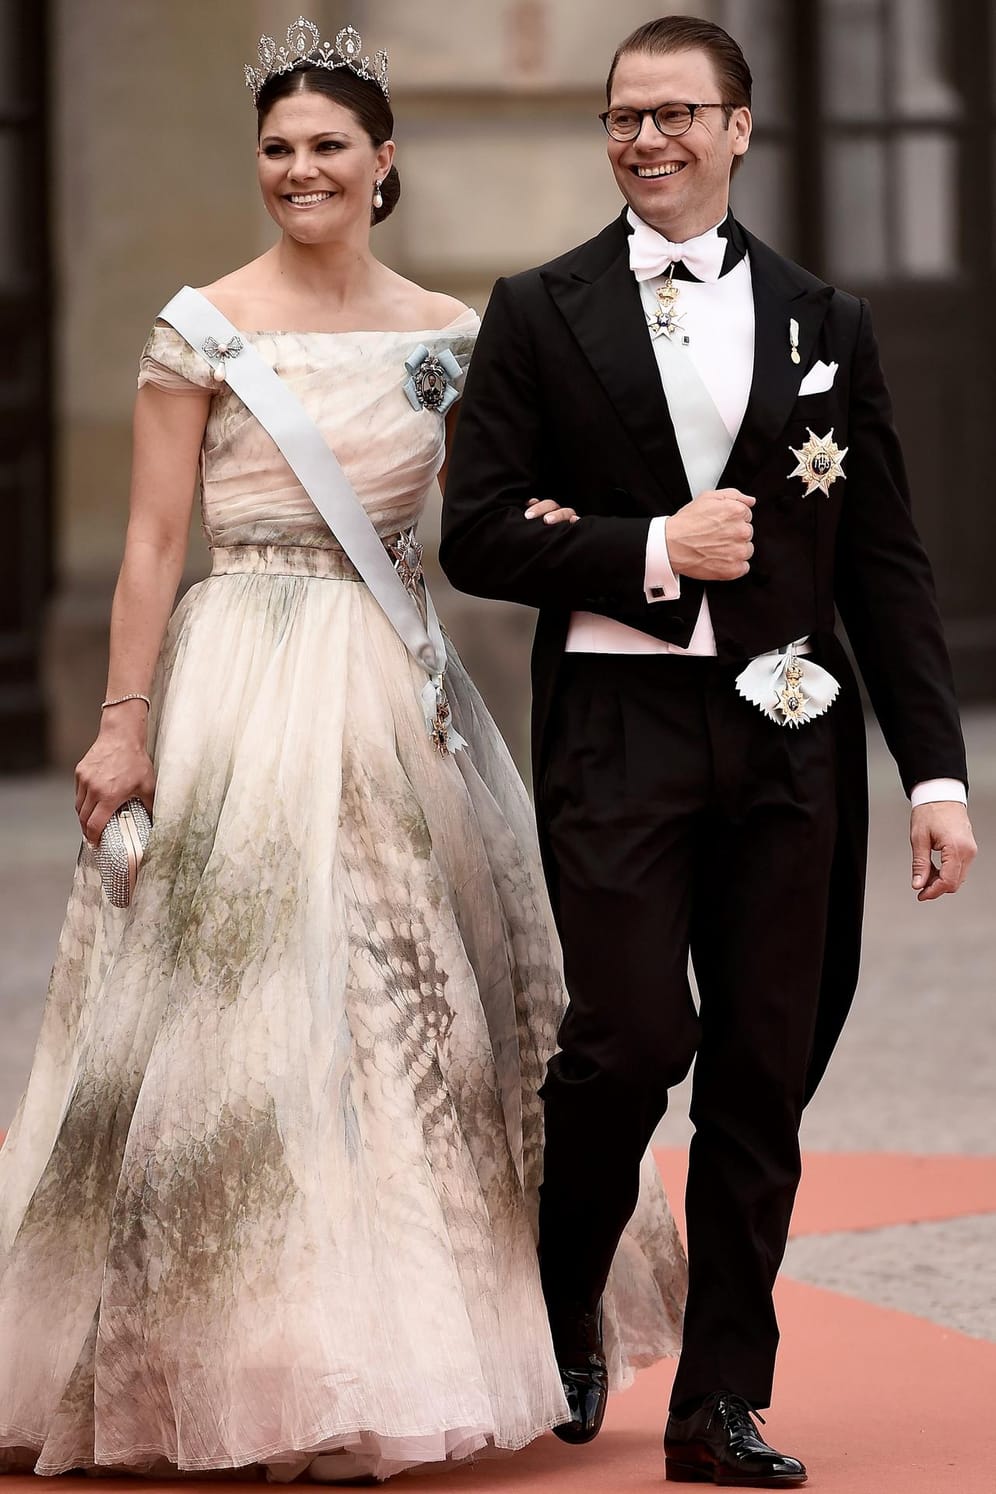 Kronprinzessin Victoria und Prinz Daniel: Die Kronprinzessin von Schweden gab ihrem Fitnesstrainer 2010 das Jawort.